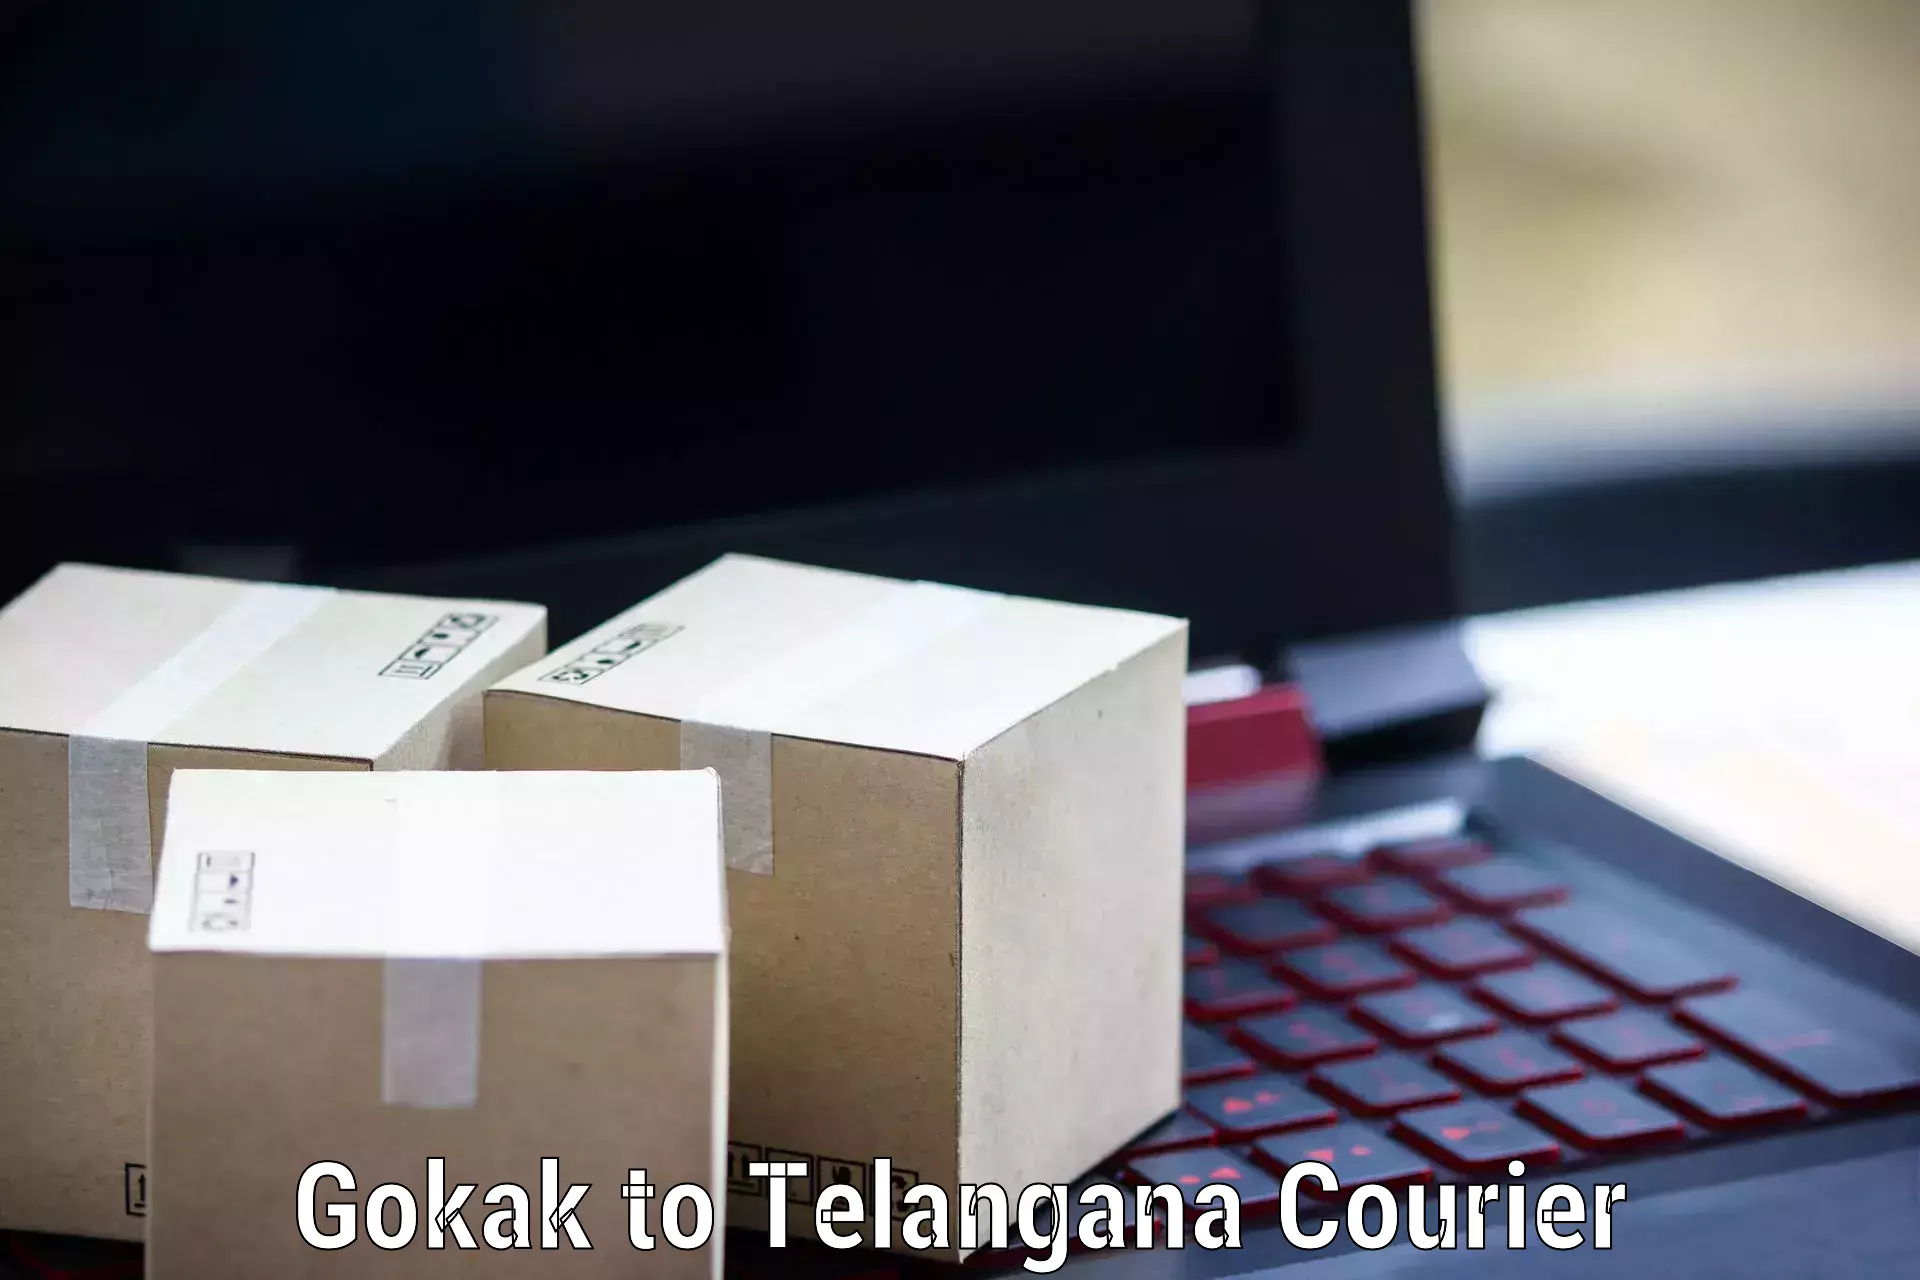 Subscription-based courier Gokak to Karimnagar